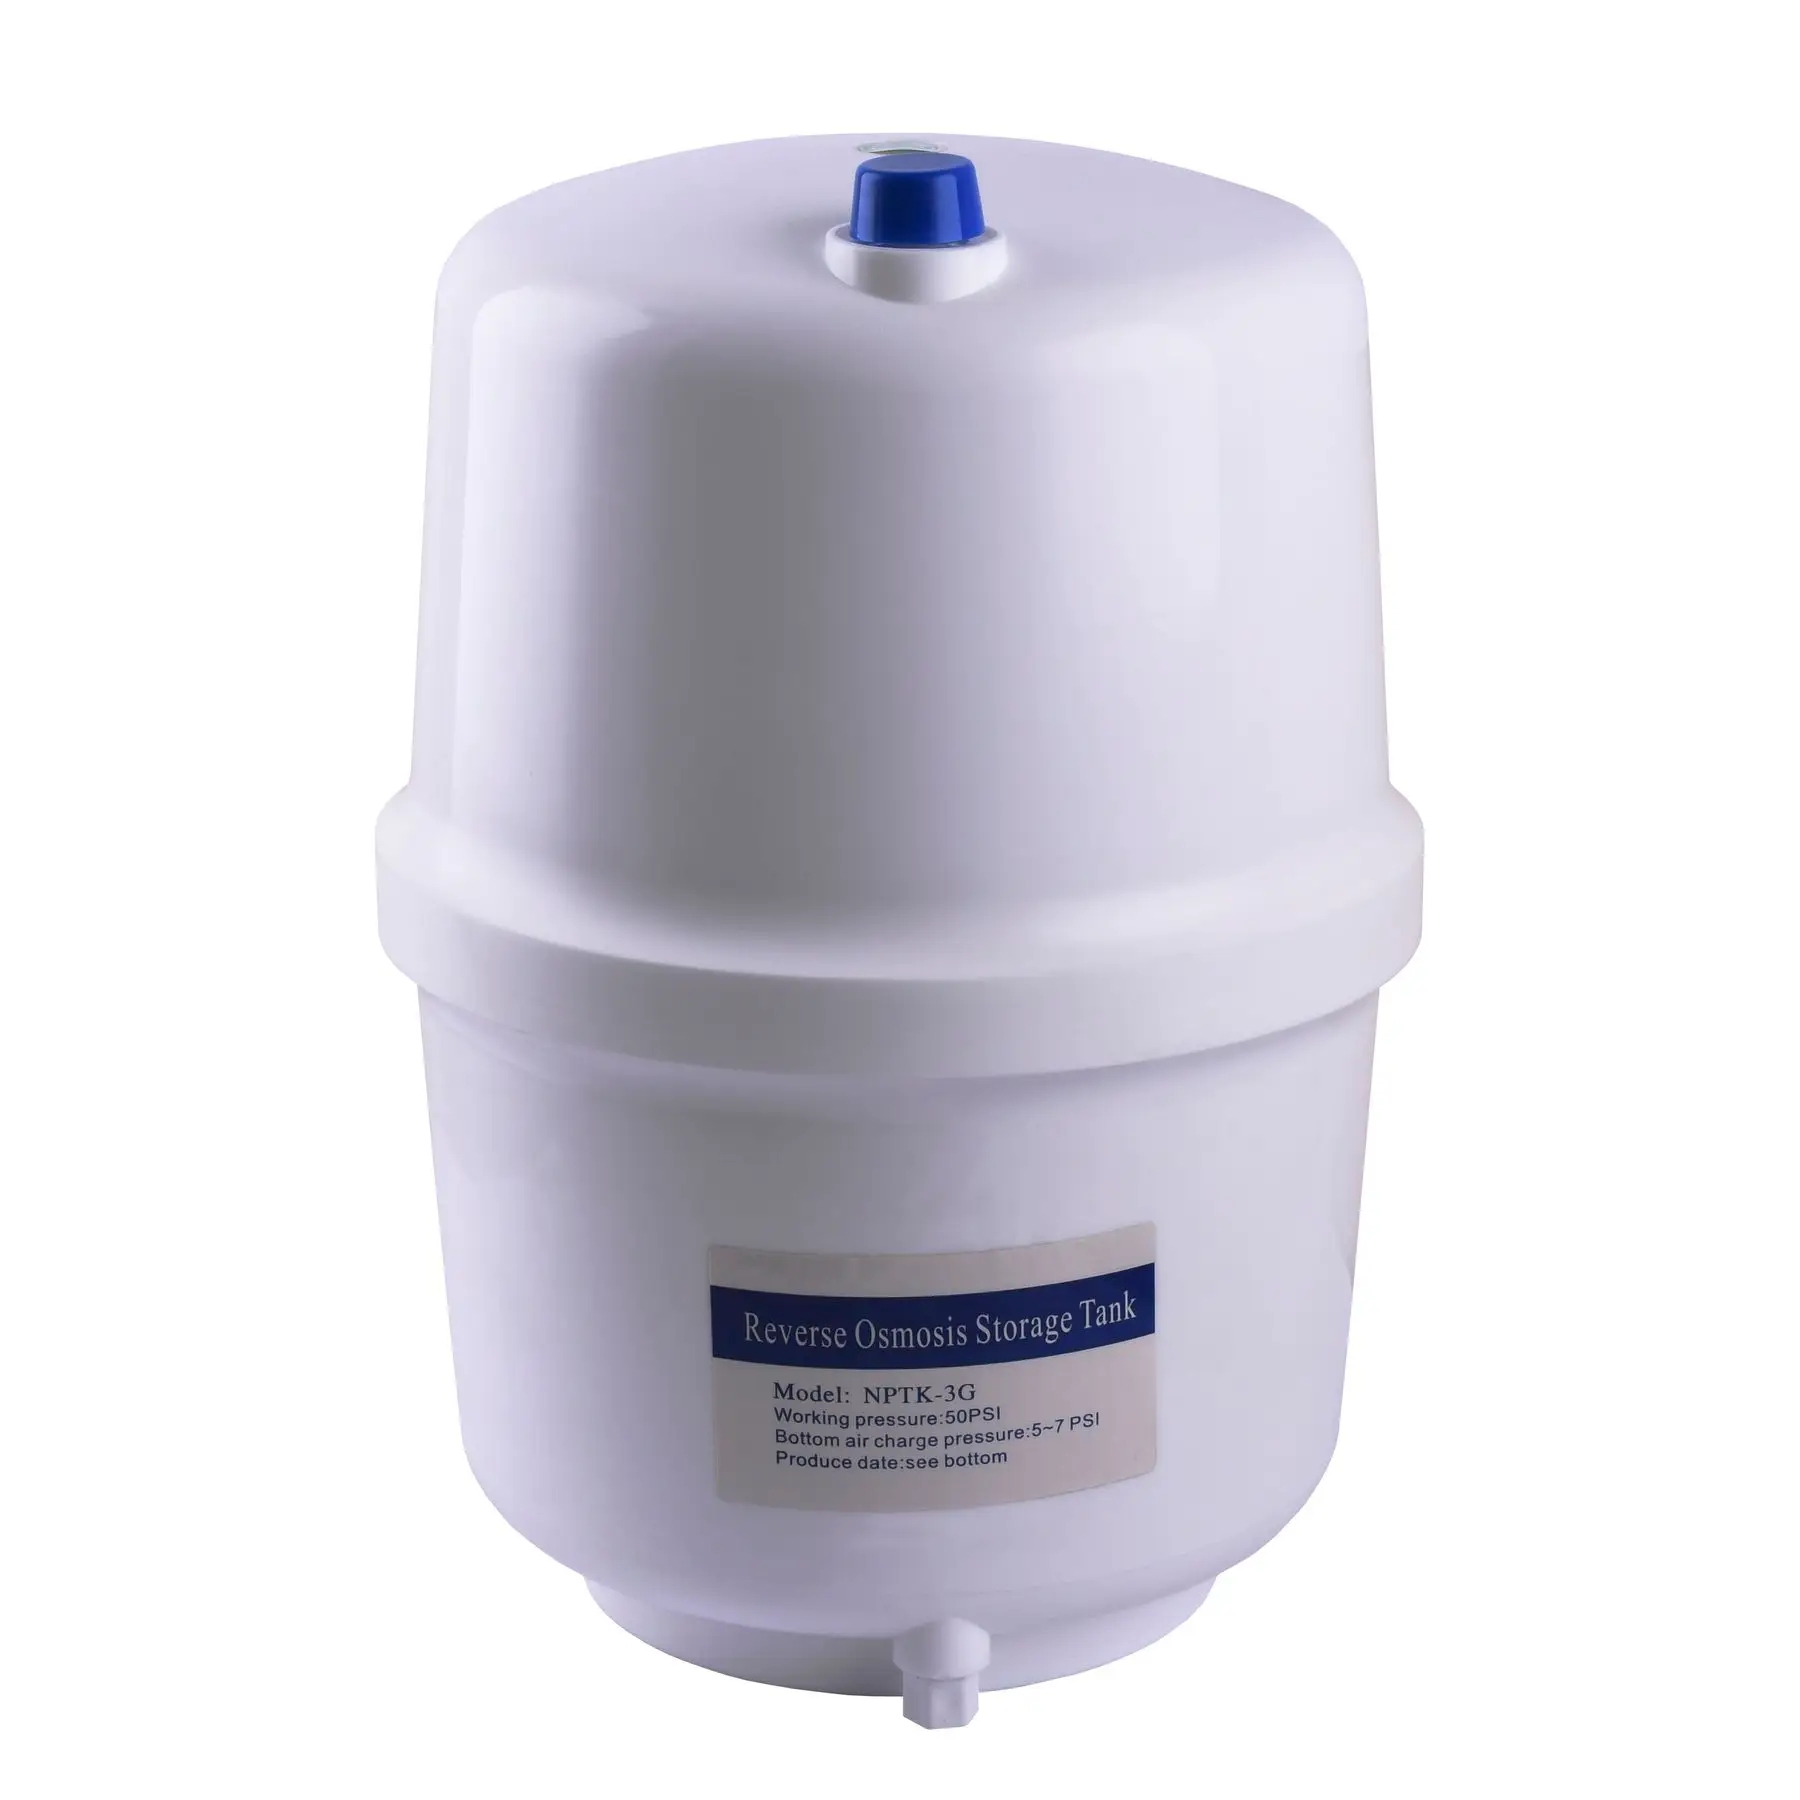 Фильтр для воды OasisPro BSL03M-RO-75 насос + пласт. бак, минерализатор отзывы - изображения 5